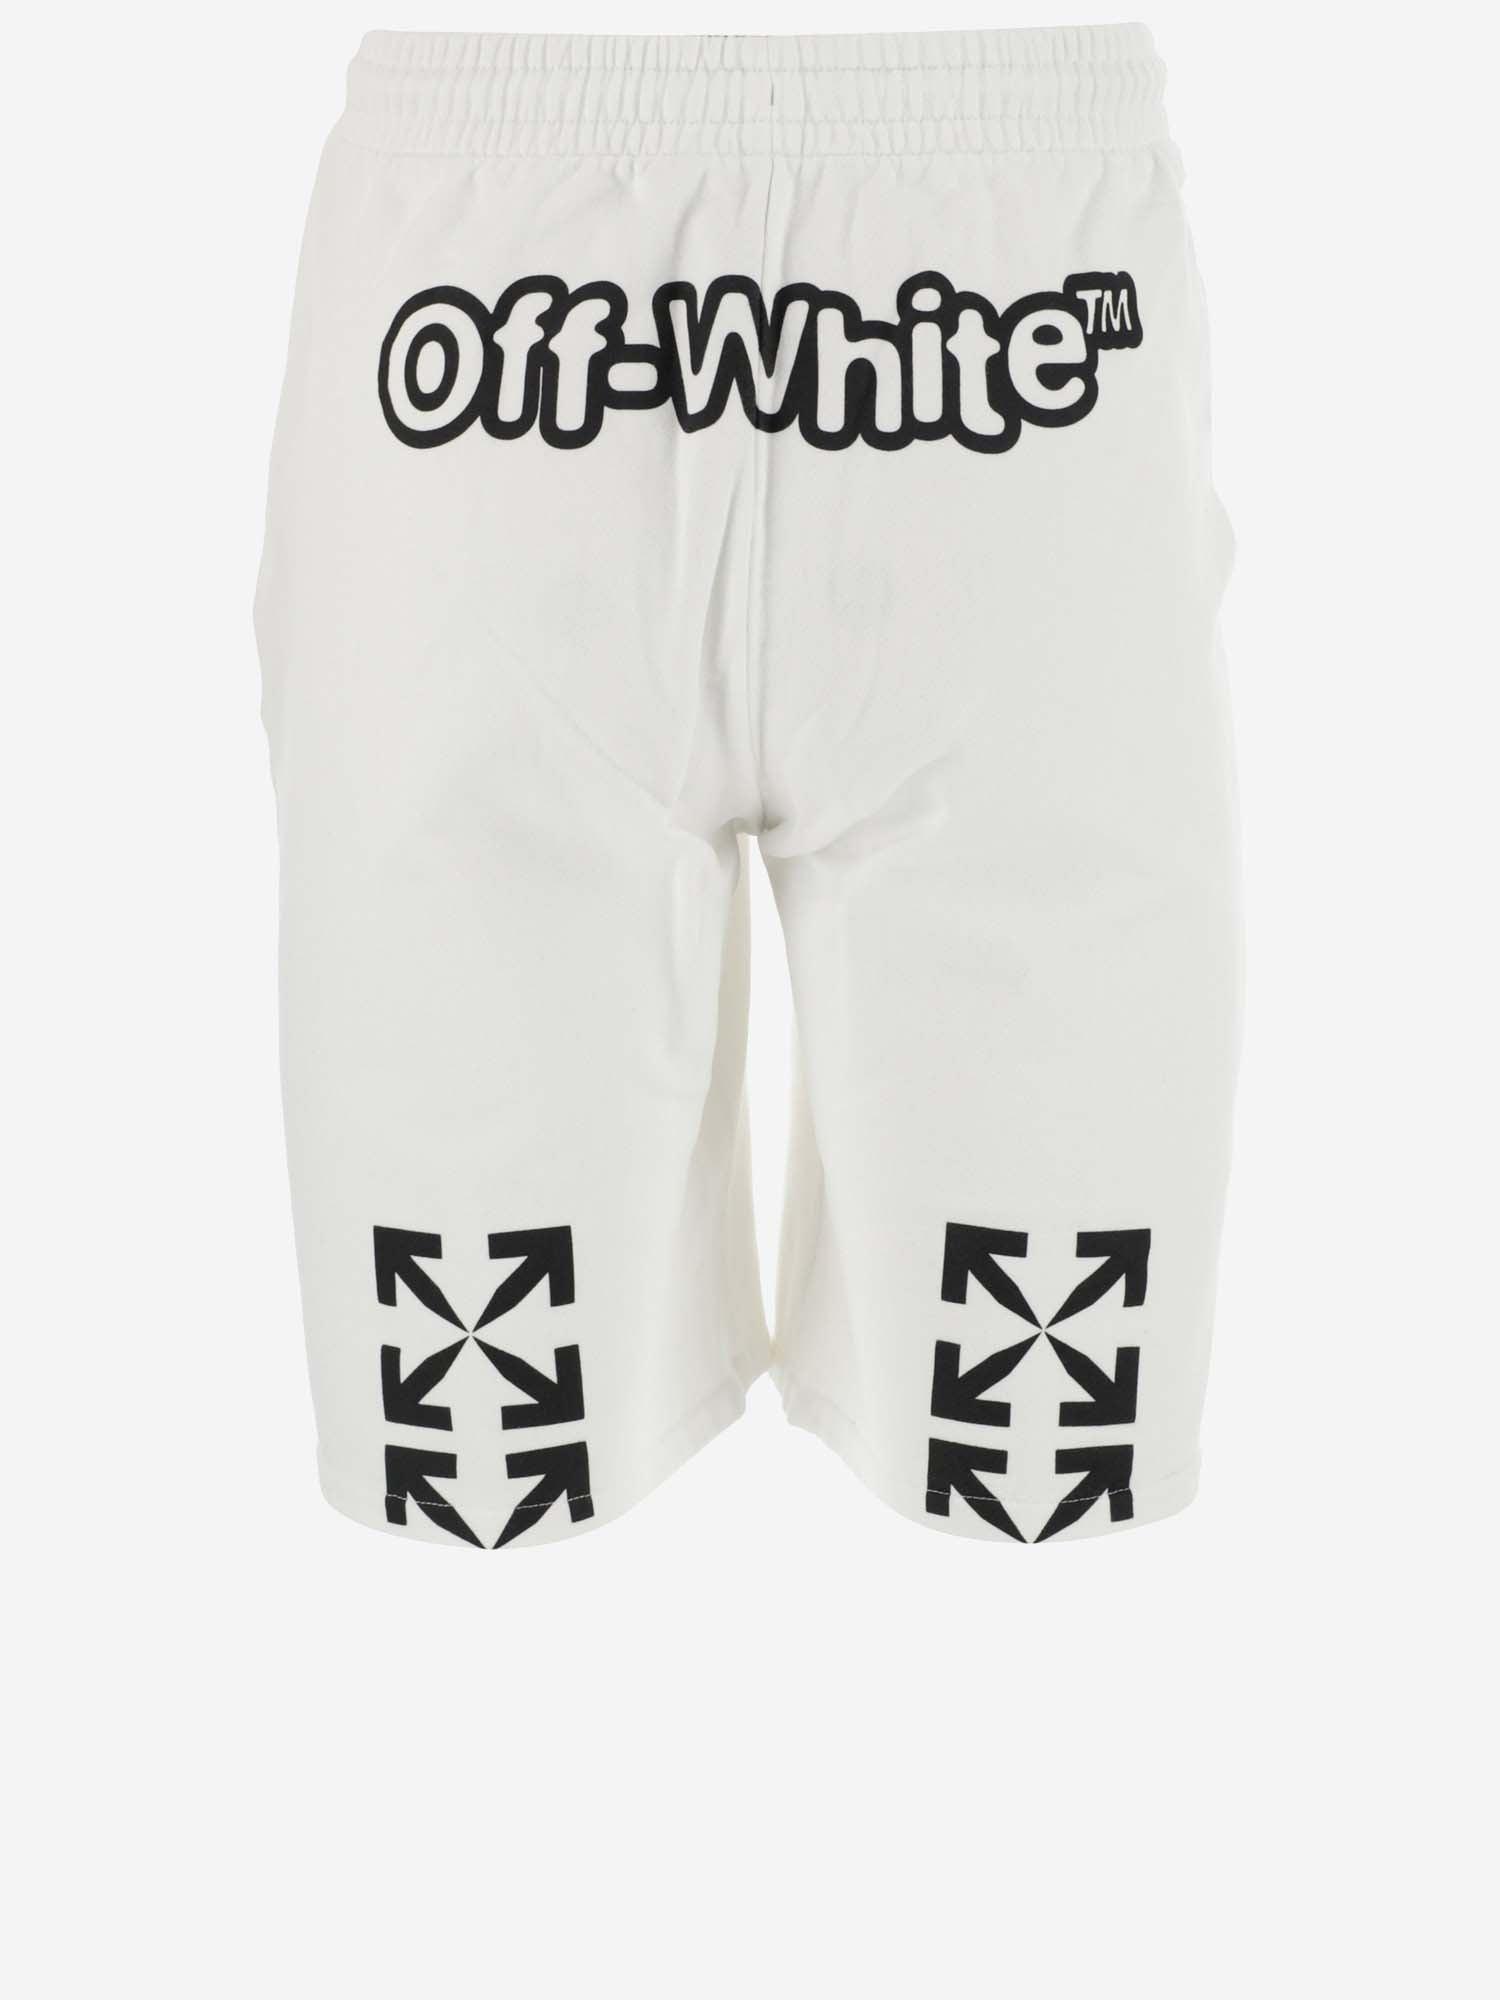 Off-White c/o Virgil Abloh Shorts in White for Men - Lyst